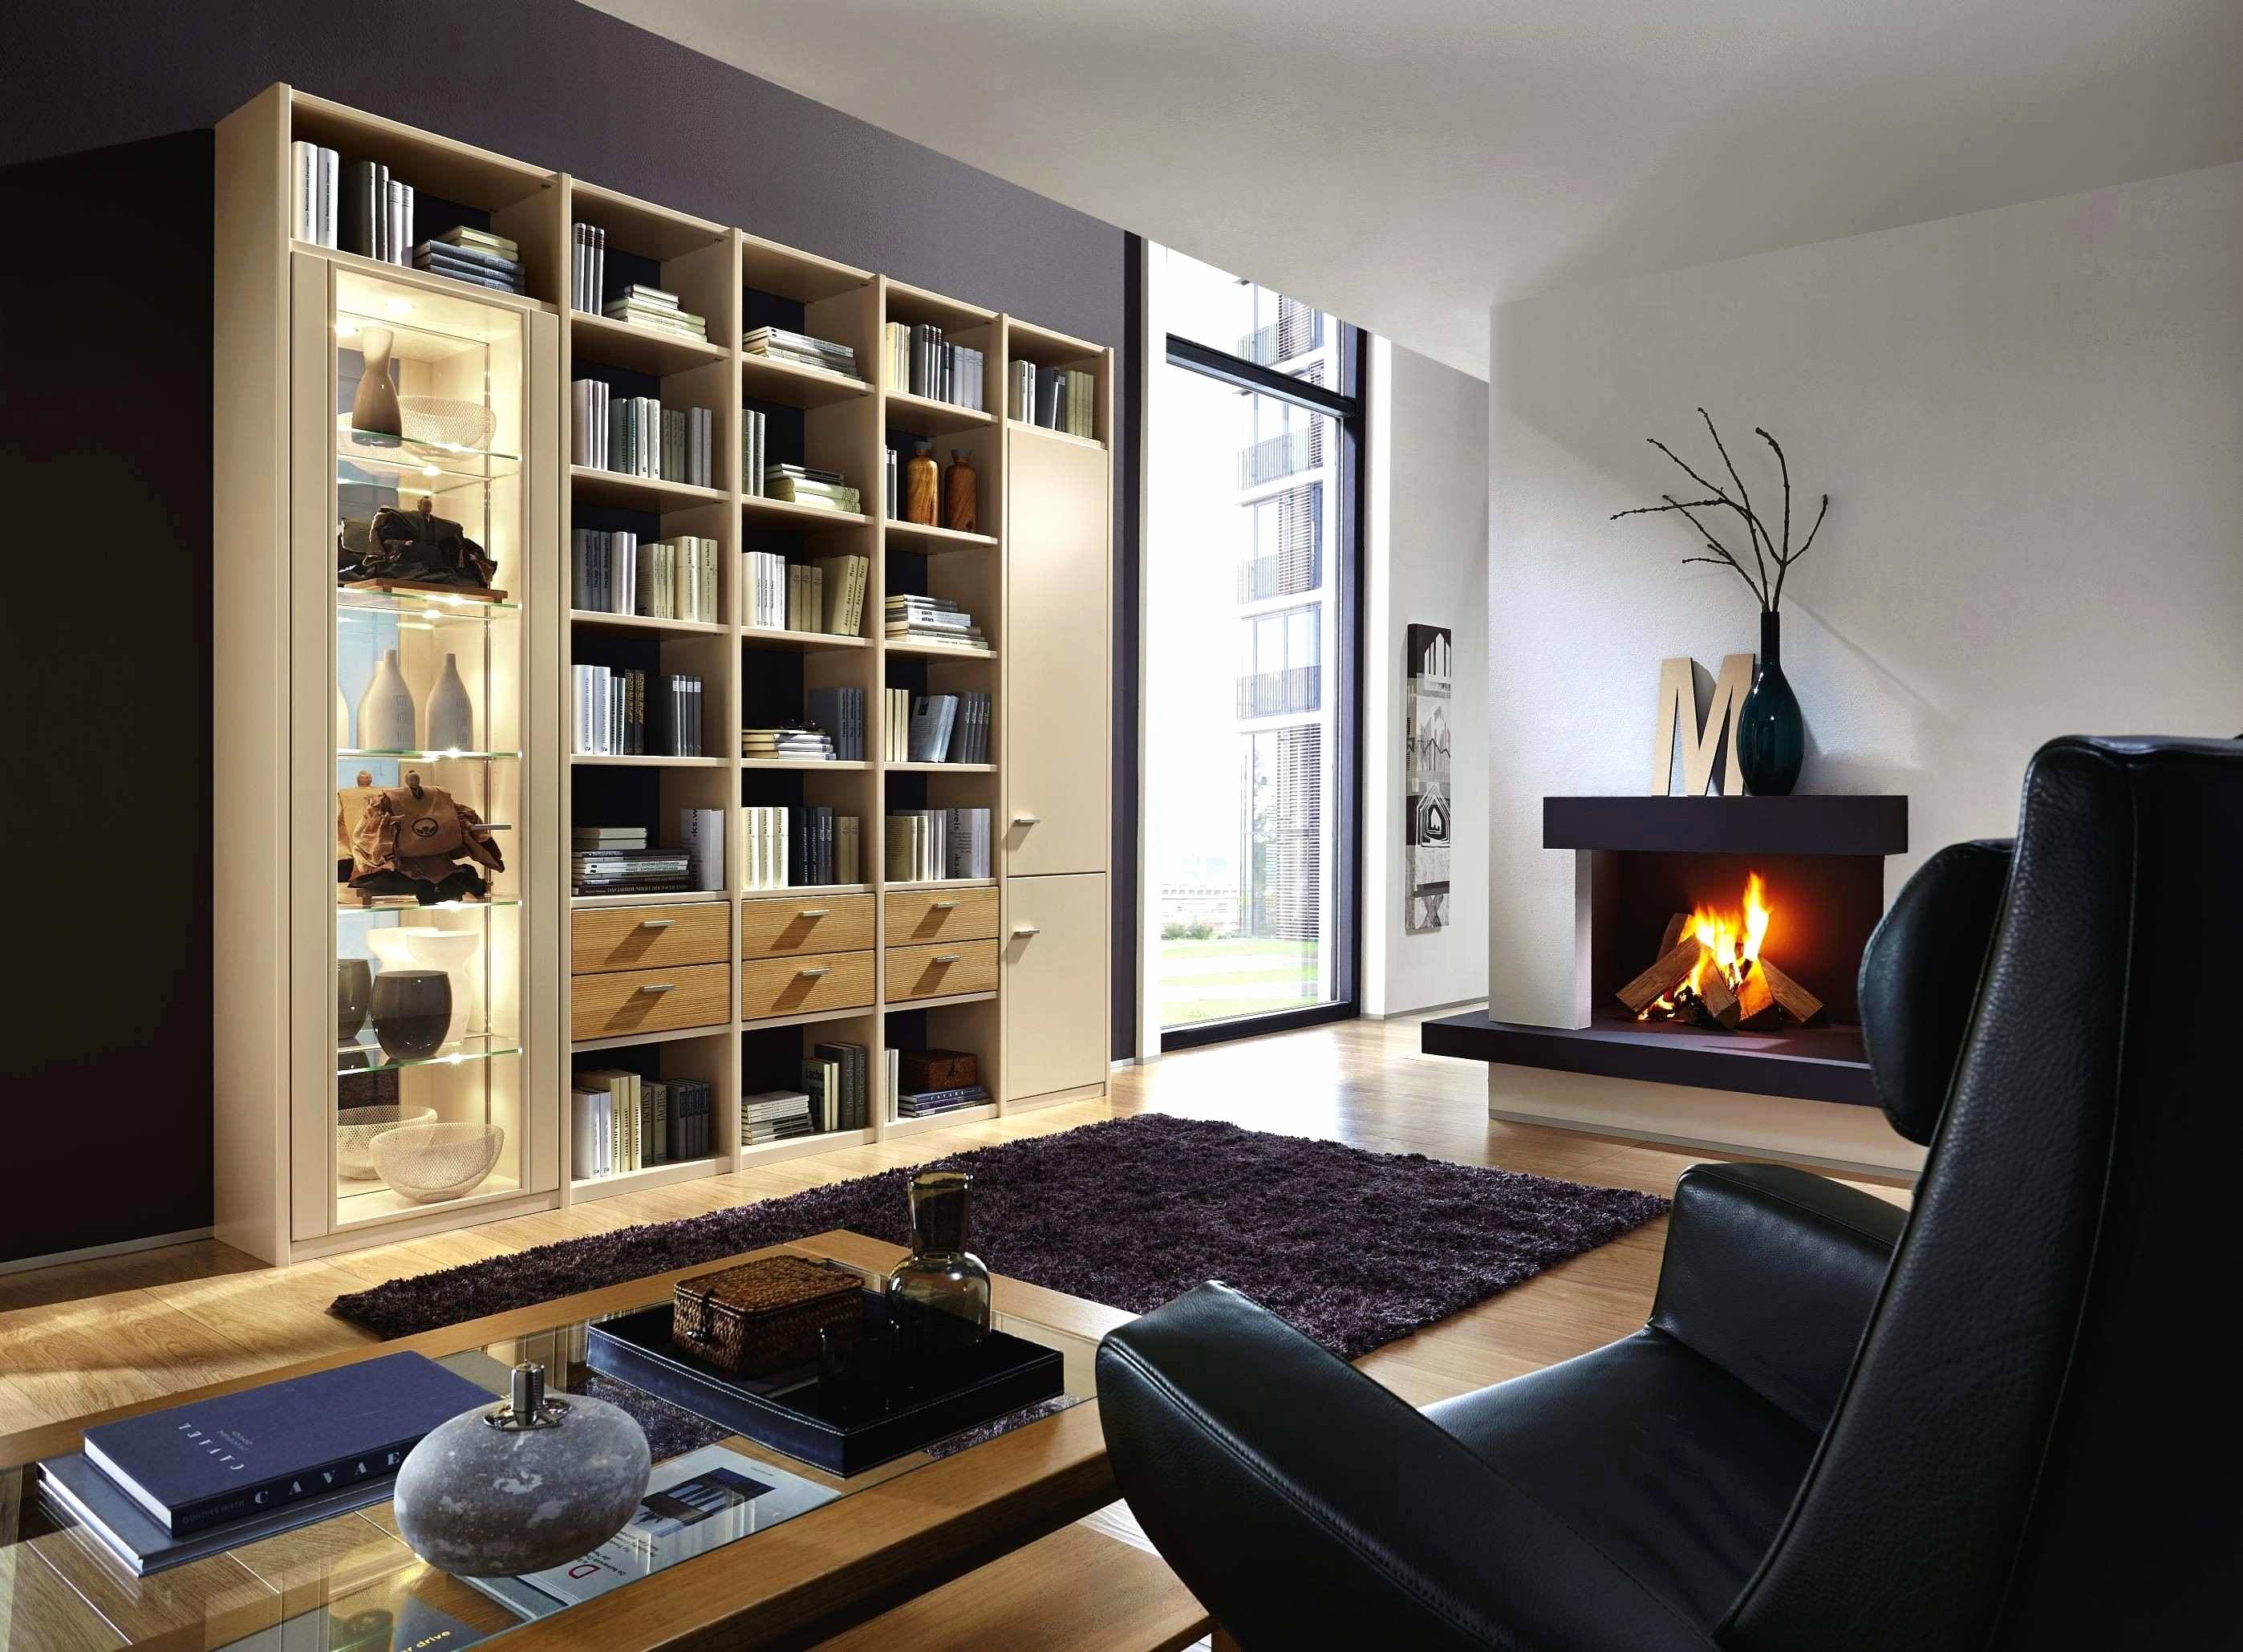 Mirrored Fireplace Best Of Beautiful Wohnzimmerschrank Mit Kamin Concept